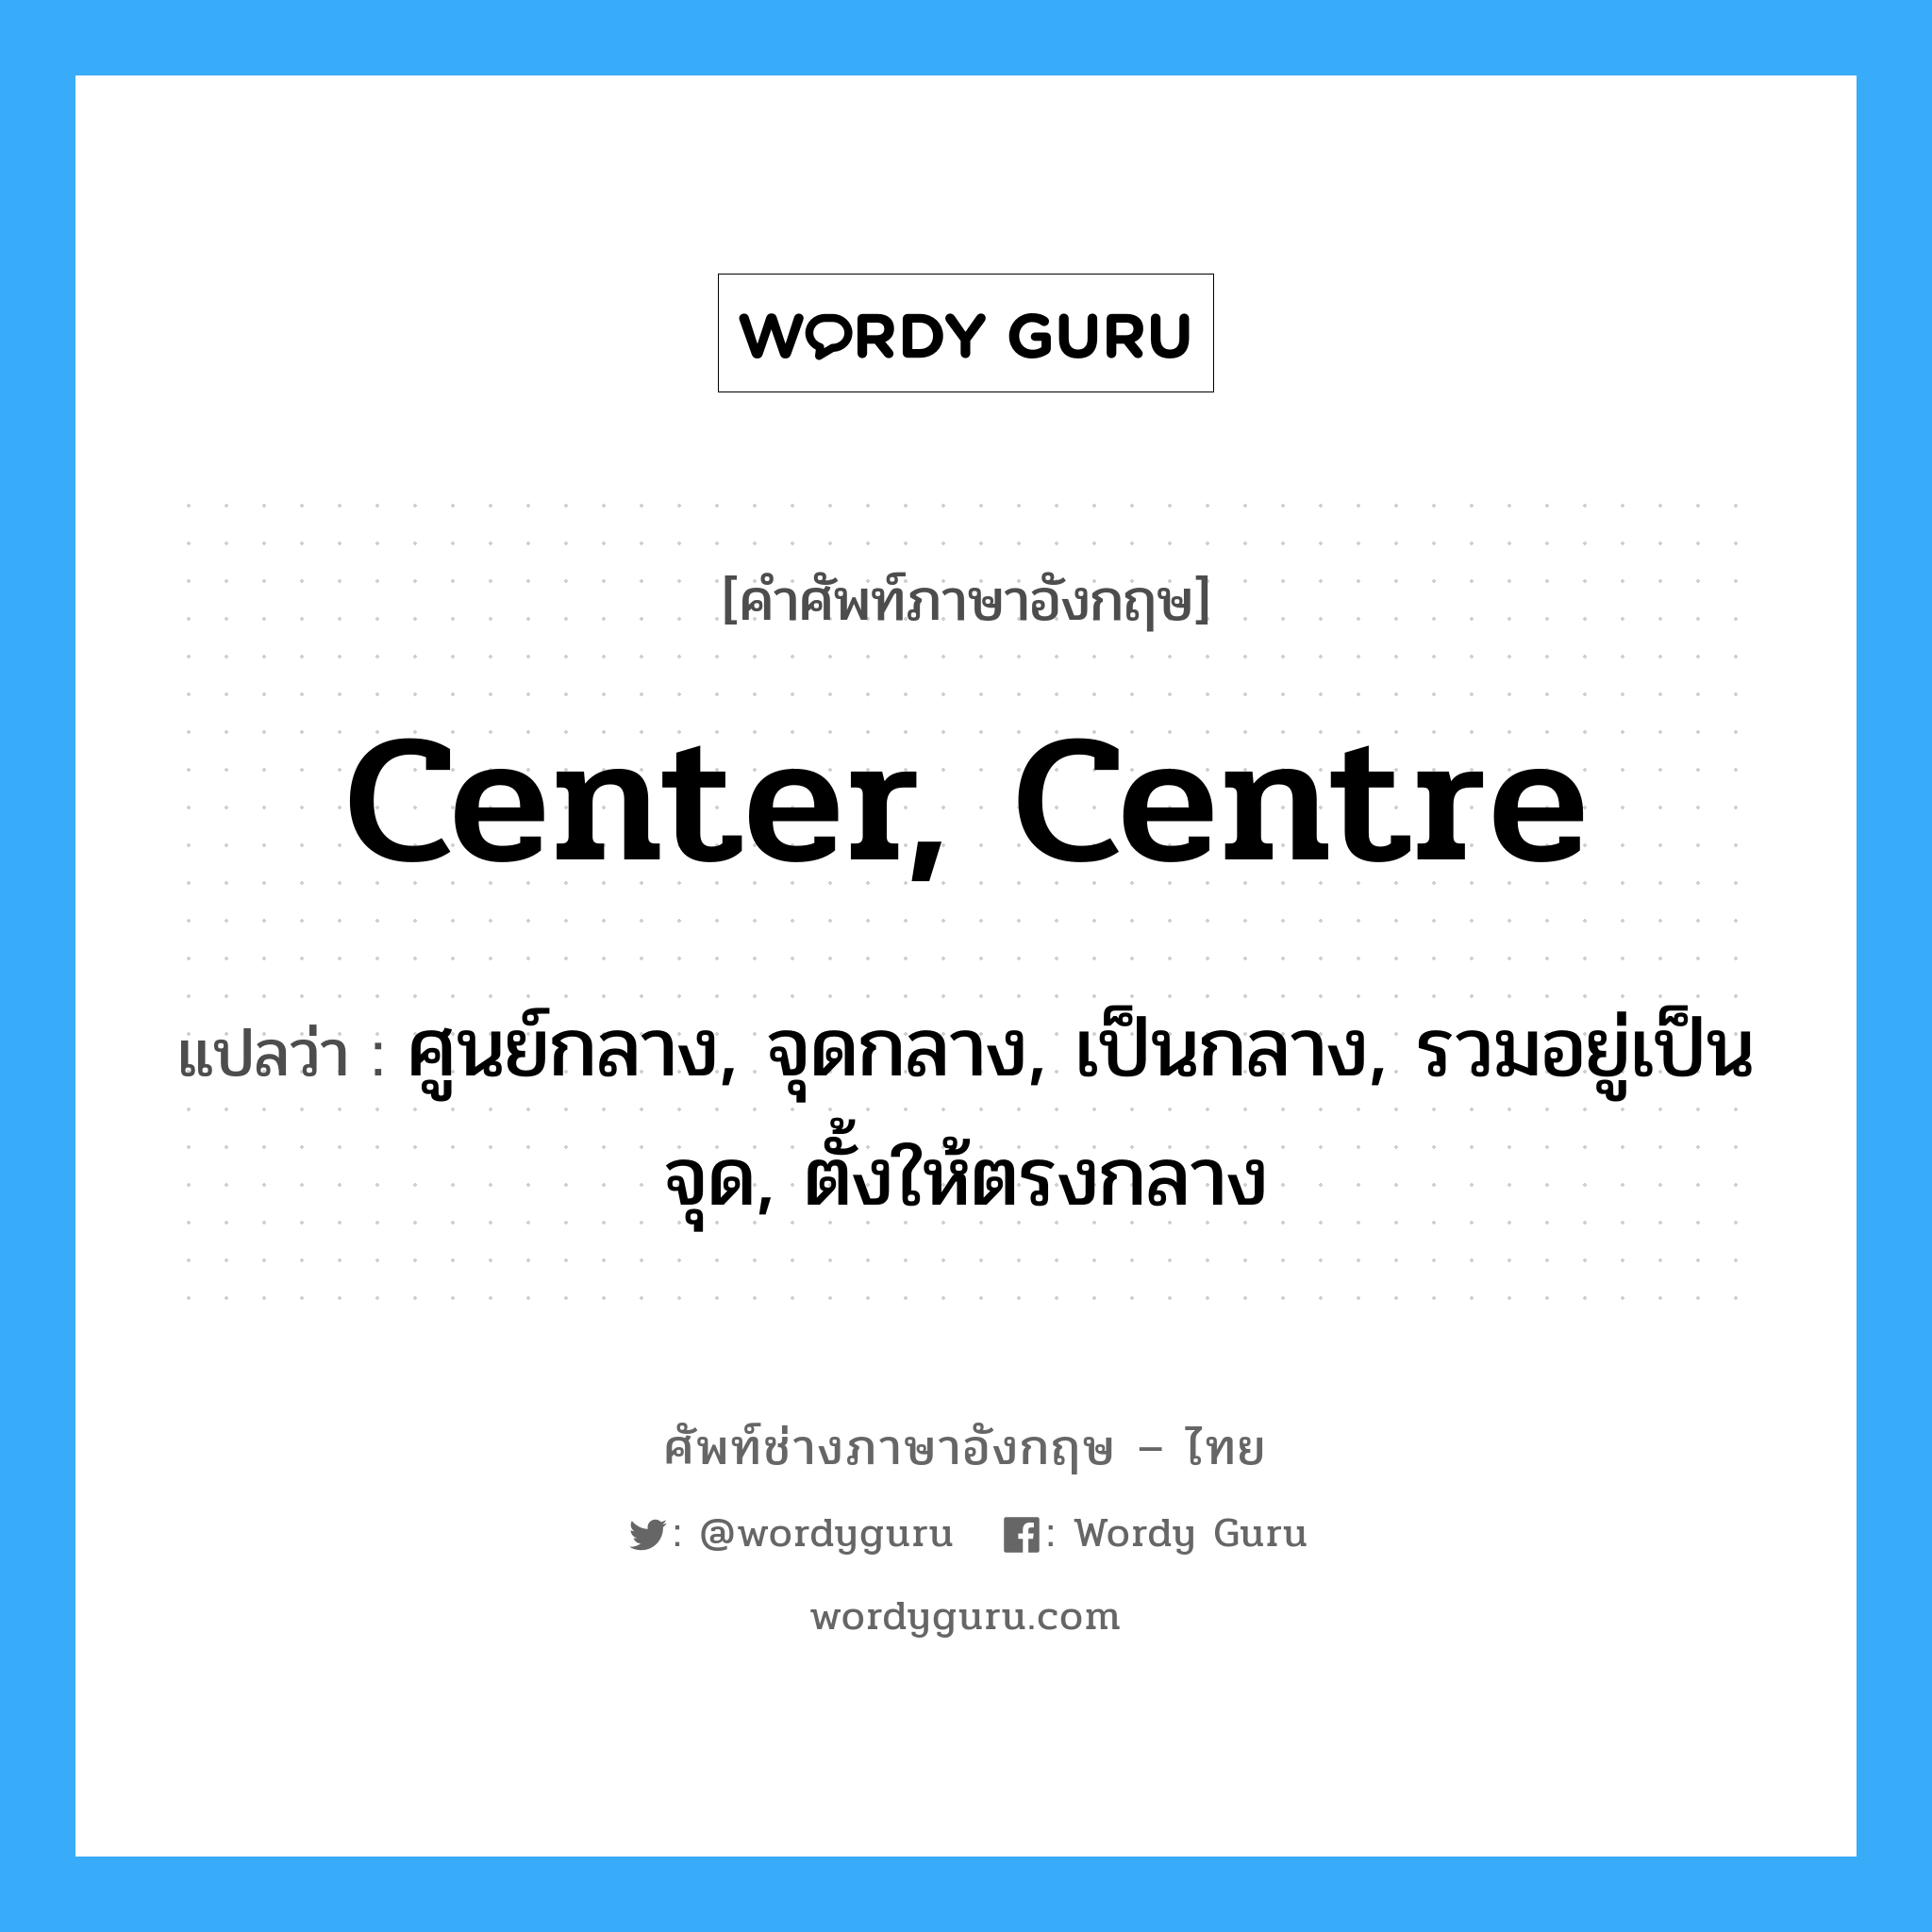 center, centre แปลว่า?, คำศัพท์ช่างภาษาอังกฤษ - ไทย center, centre คำศัพท์ภาษาอังกฤษ center, centre แปลว่า ศูนย์กลาง, จุดกลาง, เป็นกลาง, รวมอยู่เป็นจุด, ตั้งให้ตรงกลาง